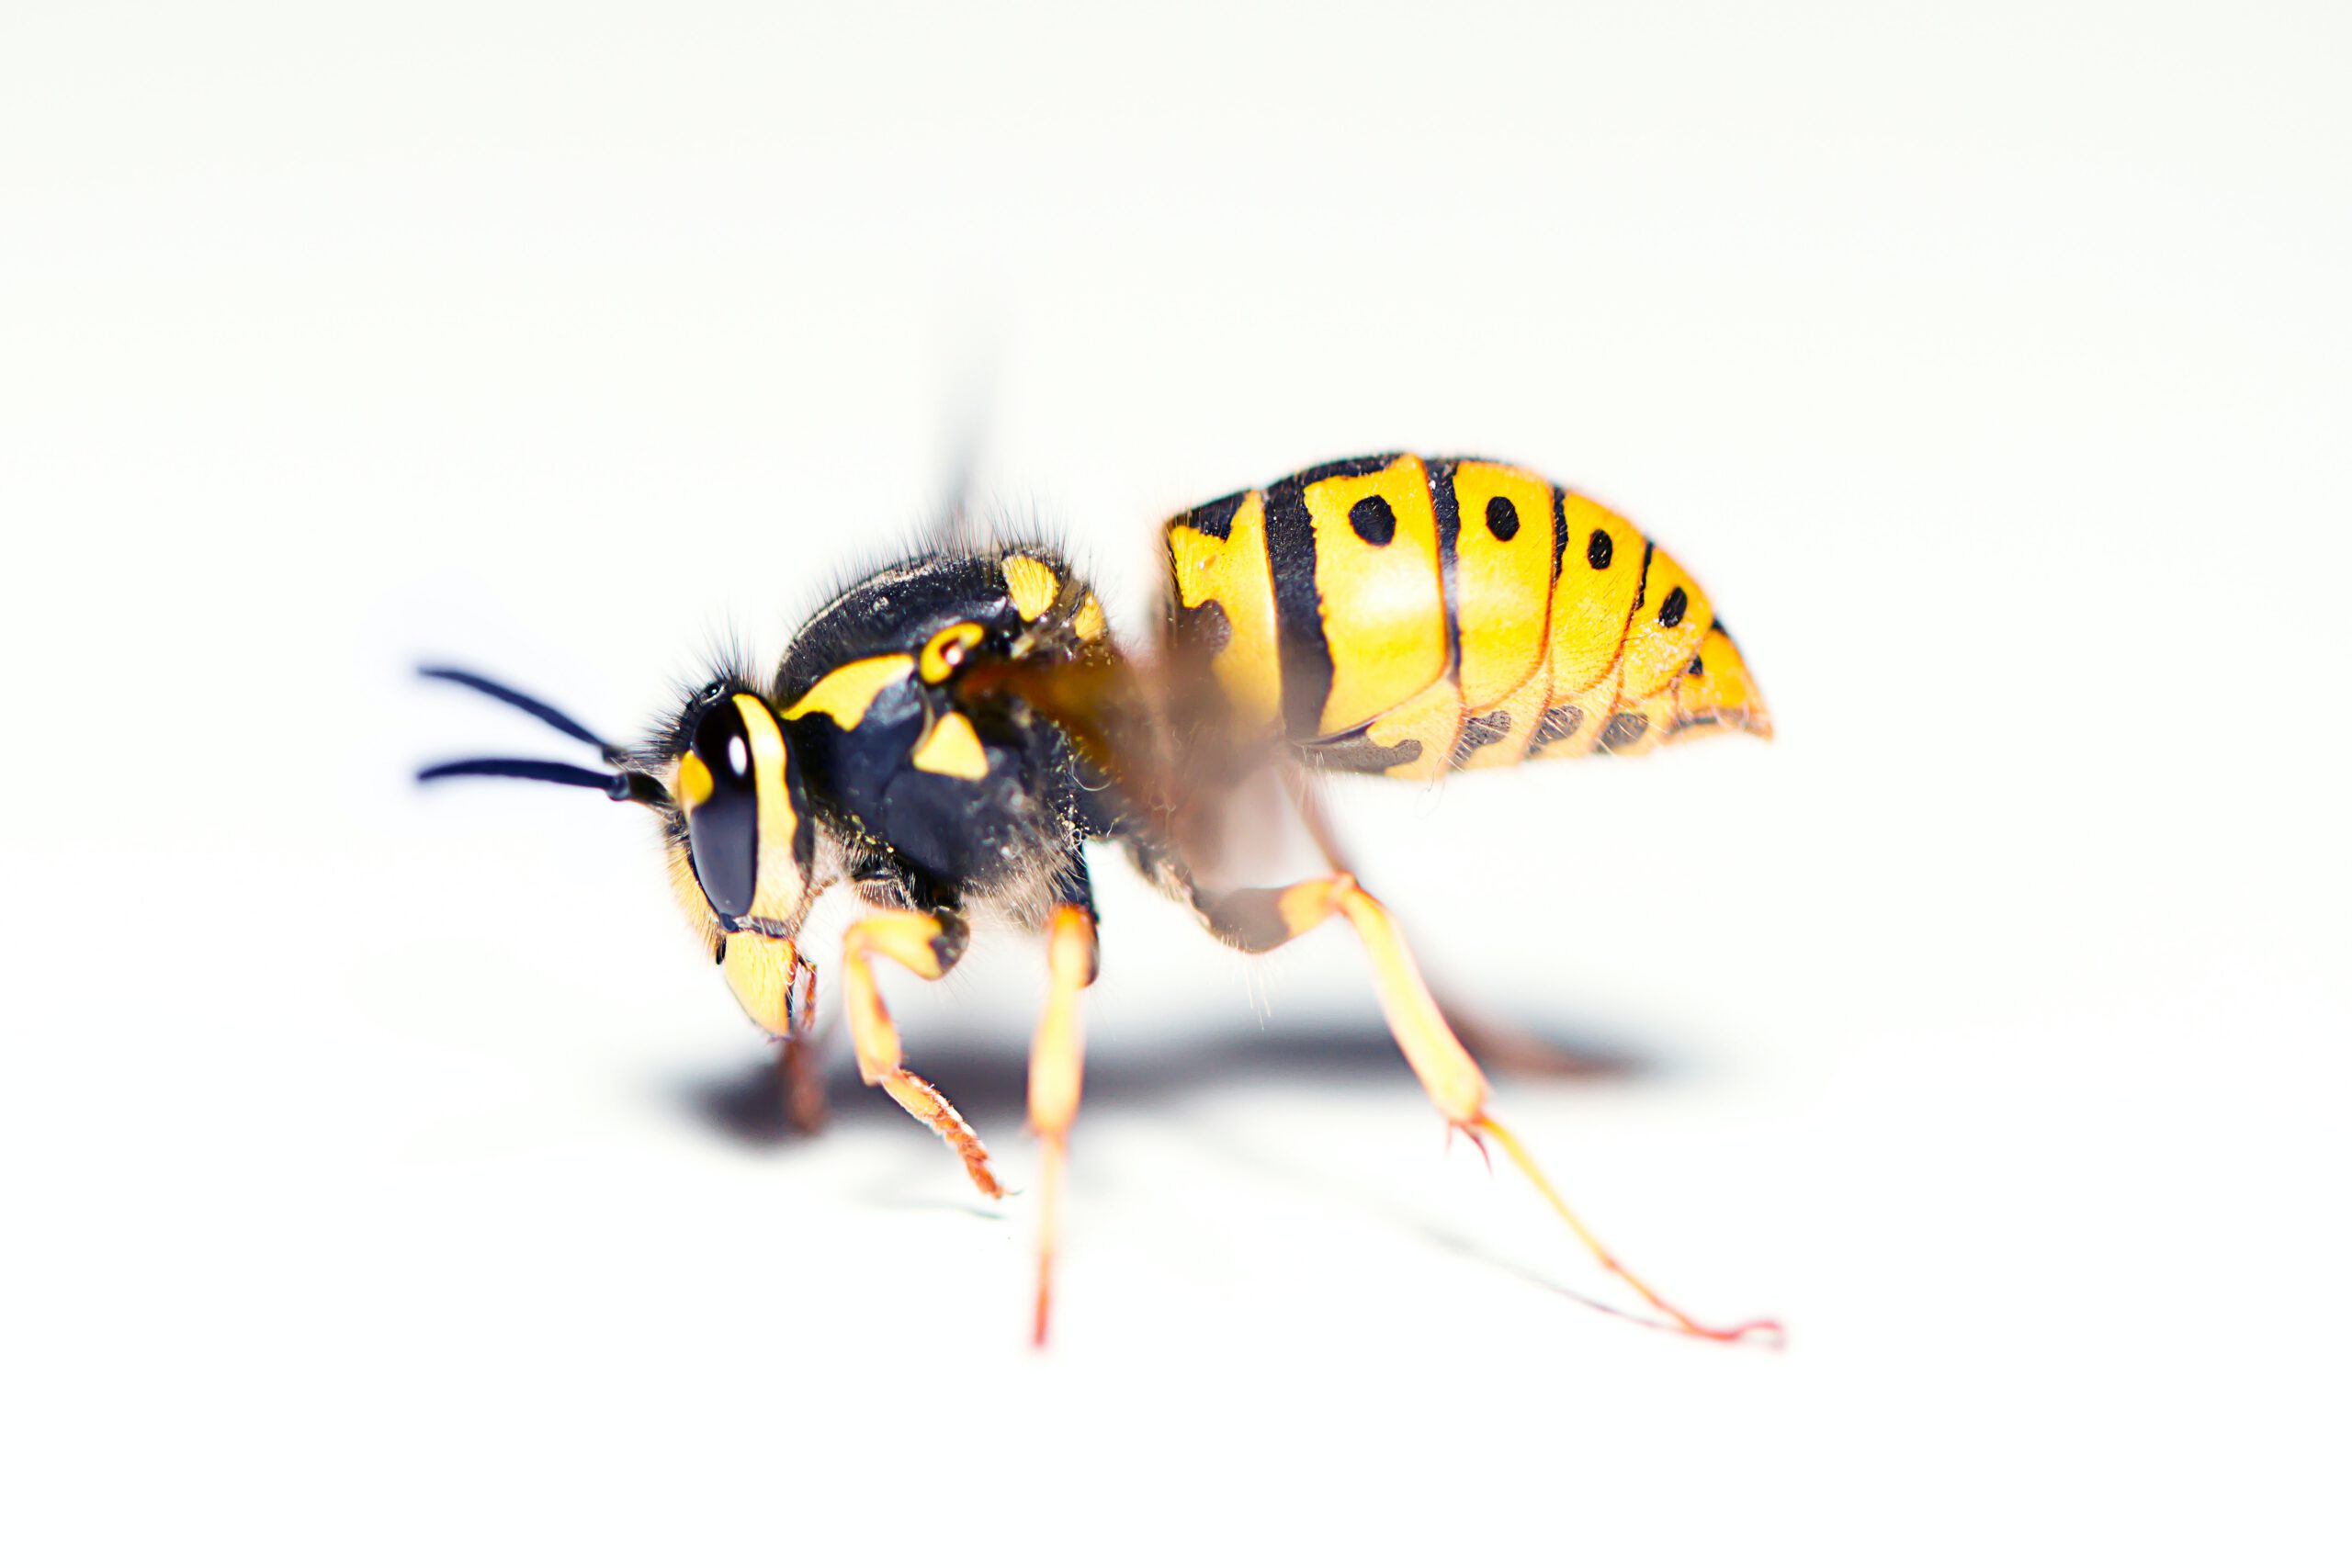 Wespennest verwijderen - Wespenaanpak - wespen verdelger, wespen verjager, wespen bestrijder, wespen verdelgen, wespen verjagen, wespen bestrijden, wespen bestrijding